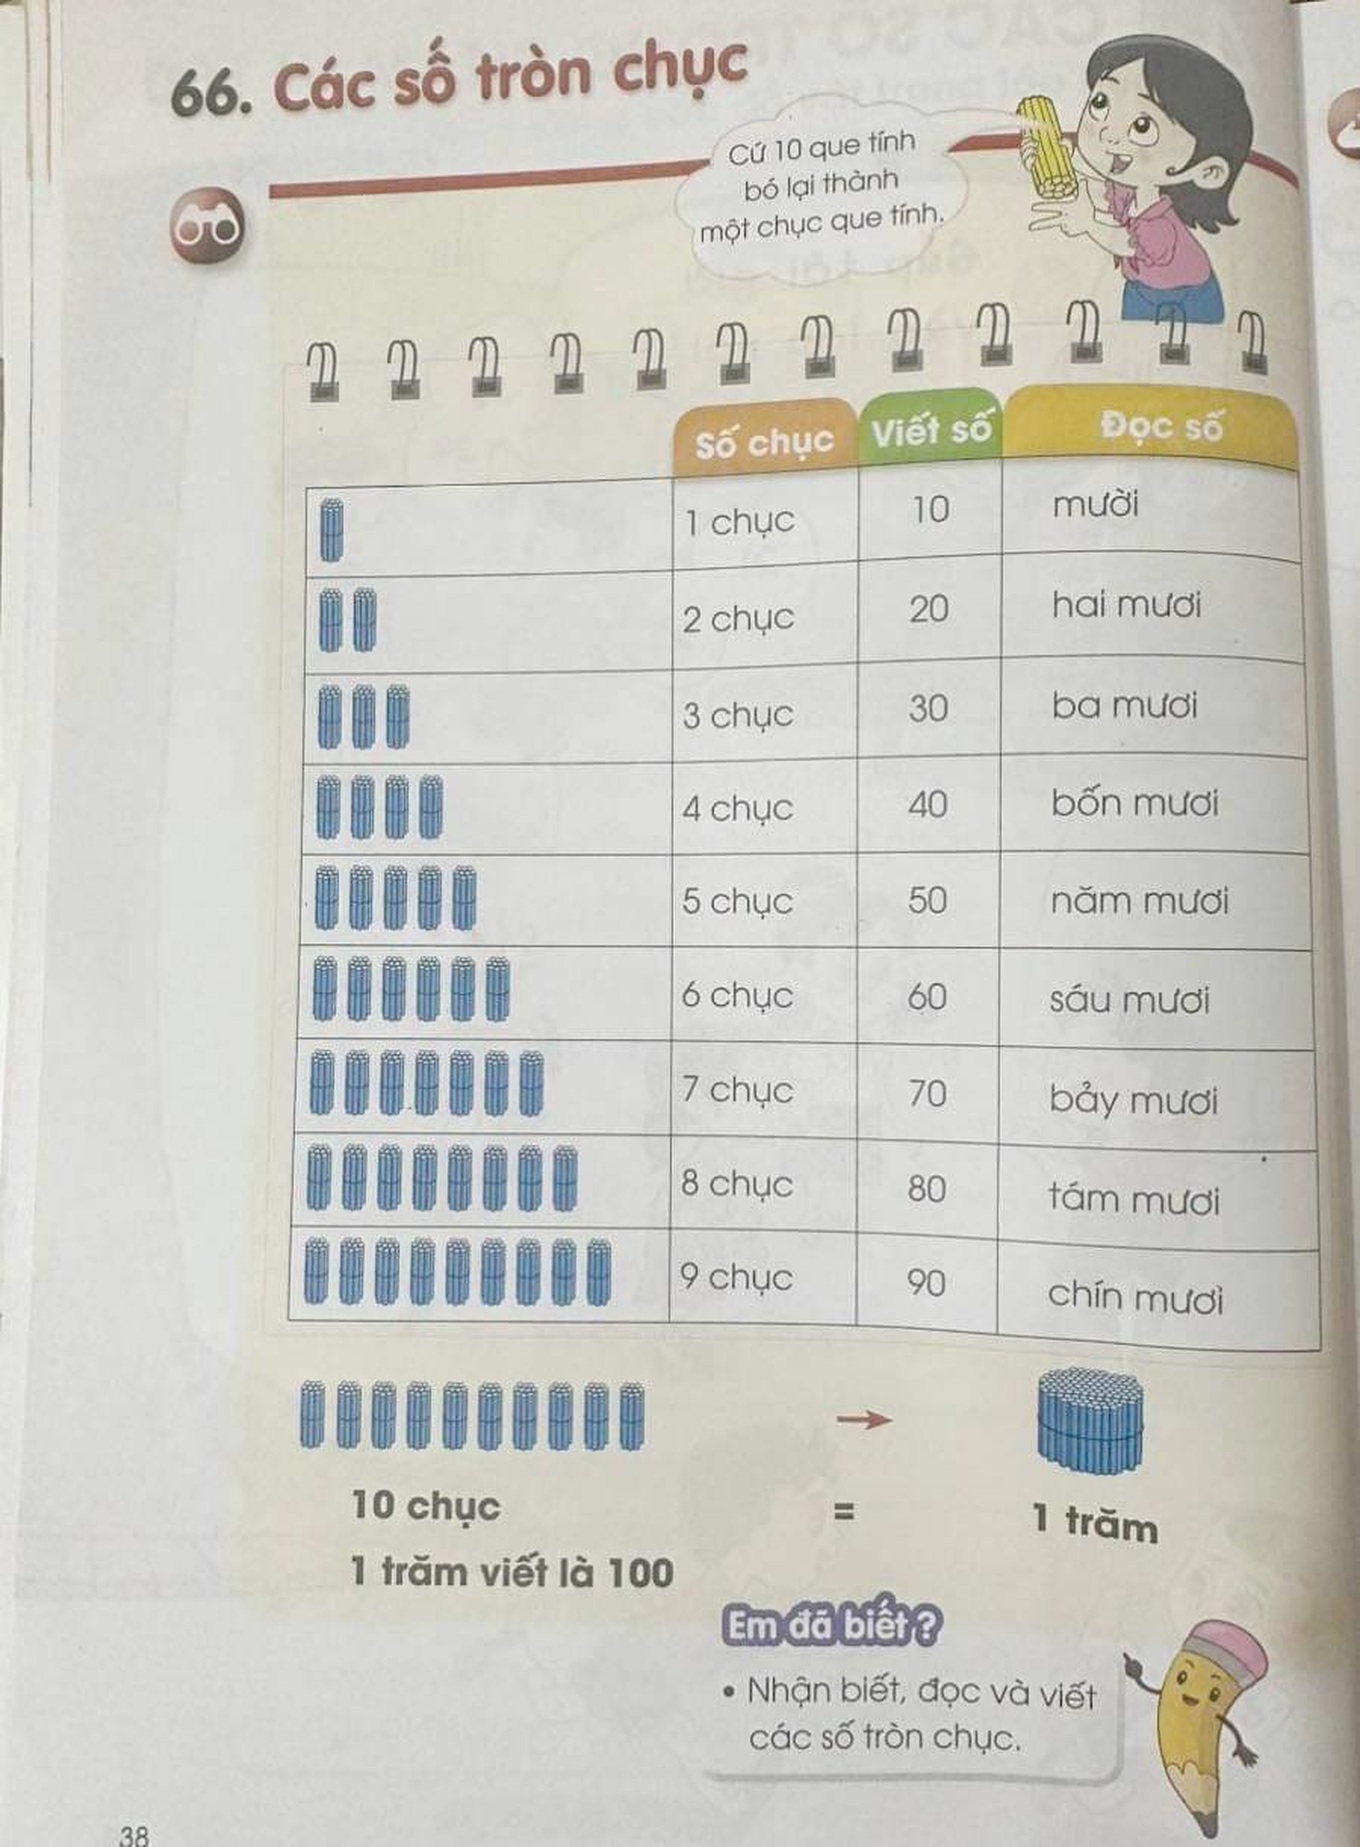 Trong sách về toán cũng có lưu ý 100 là 10 chục và cũng là số tròn chục lớn nhất